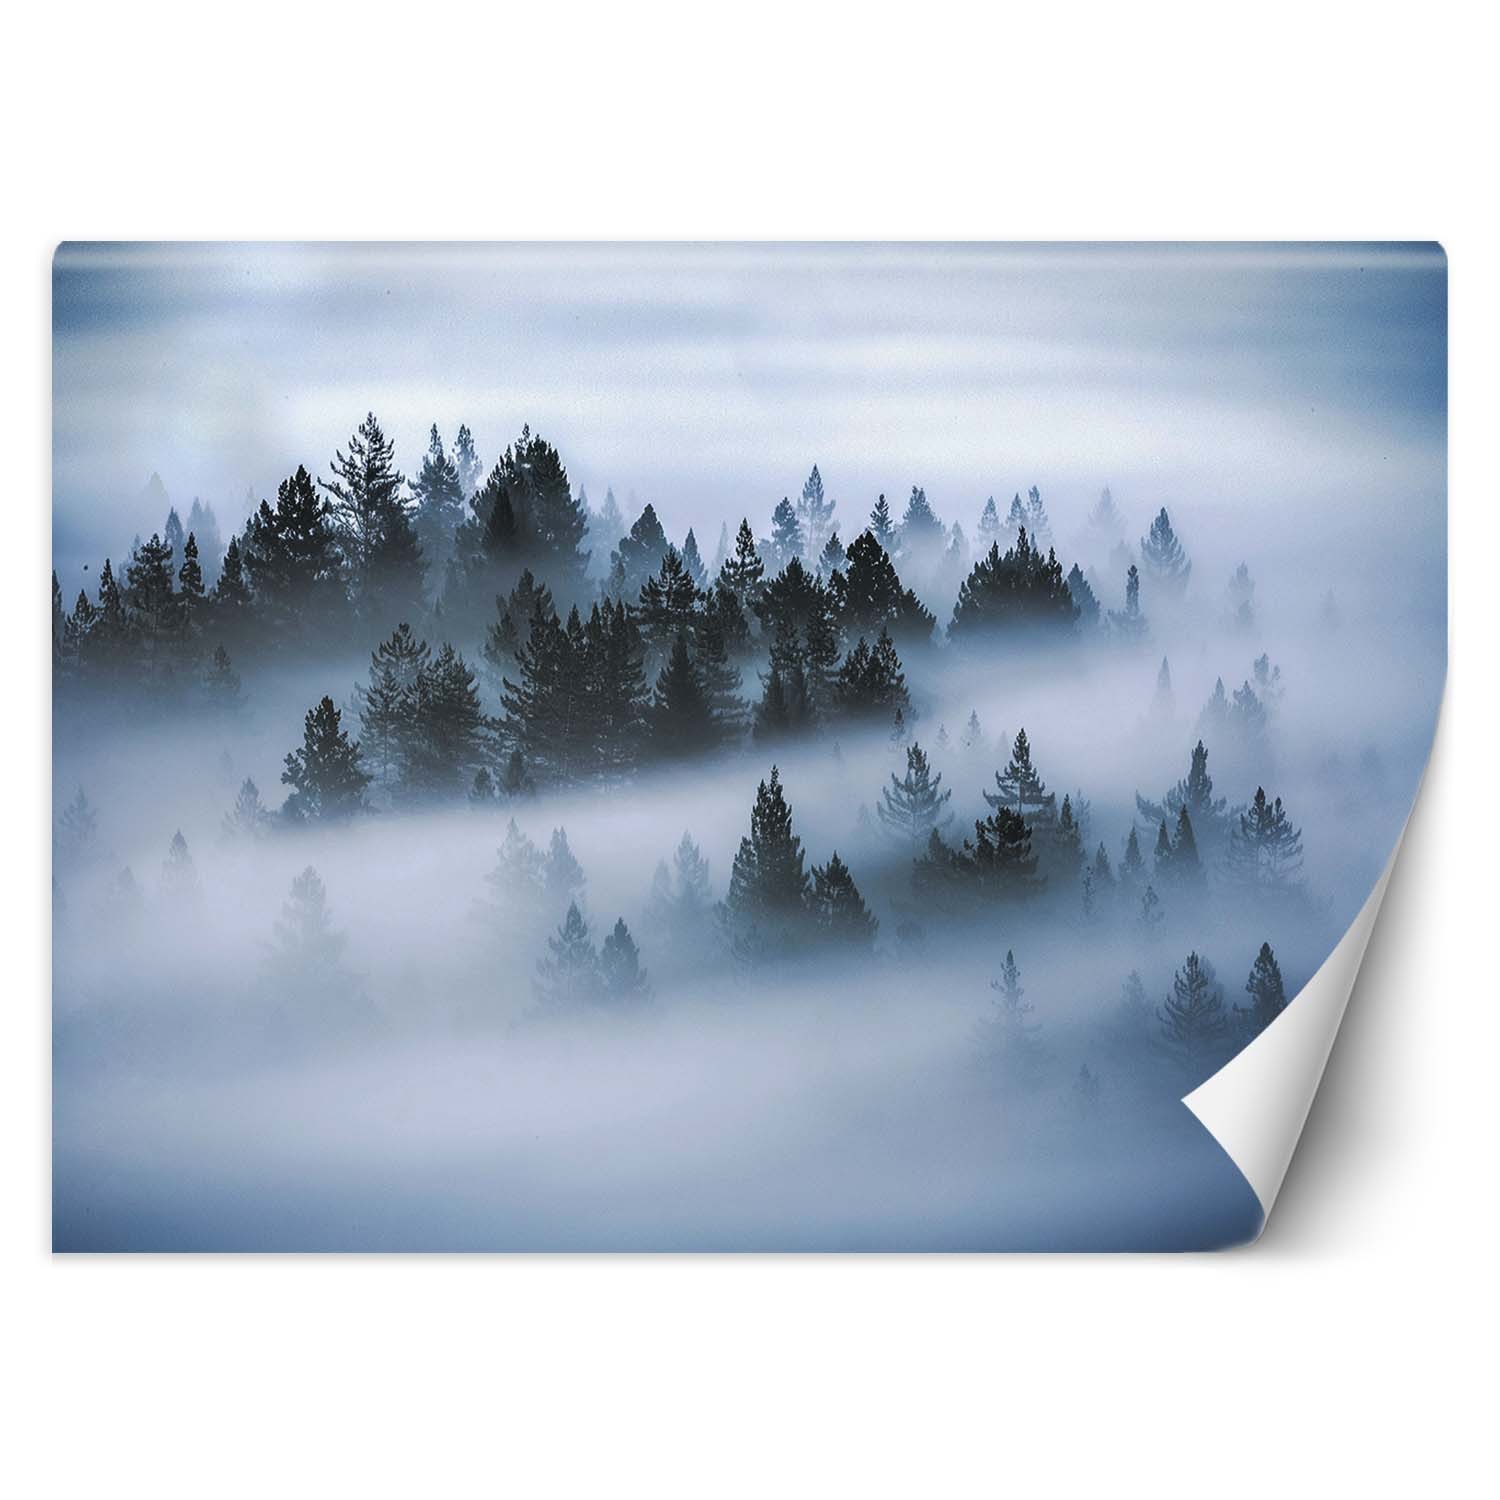 Trend24 – Behang – Bos In De Mist – Behangpapier – Fotobehang Natuur – Behang Woonkamer – 250x175x2 cm – Incl. behanglijm